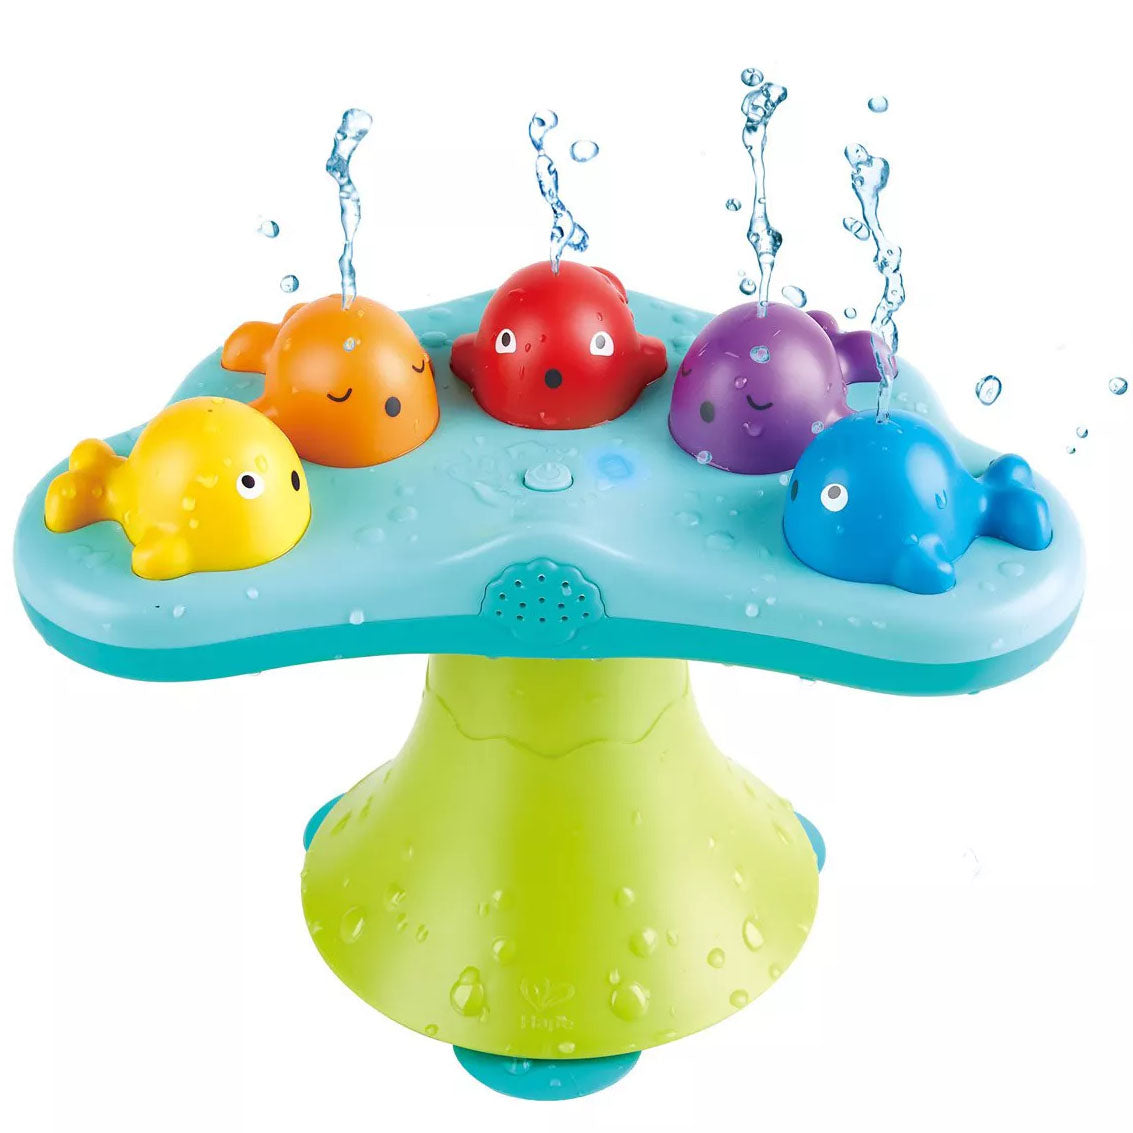 Hape Musical Whale Fountain Bath Toy 